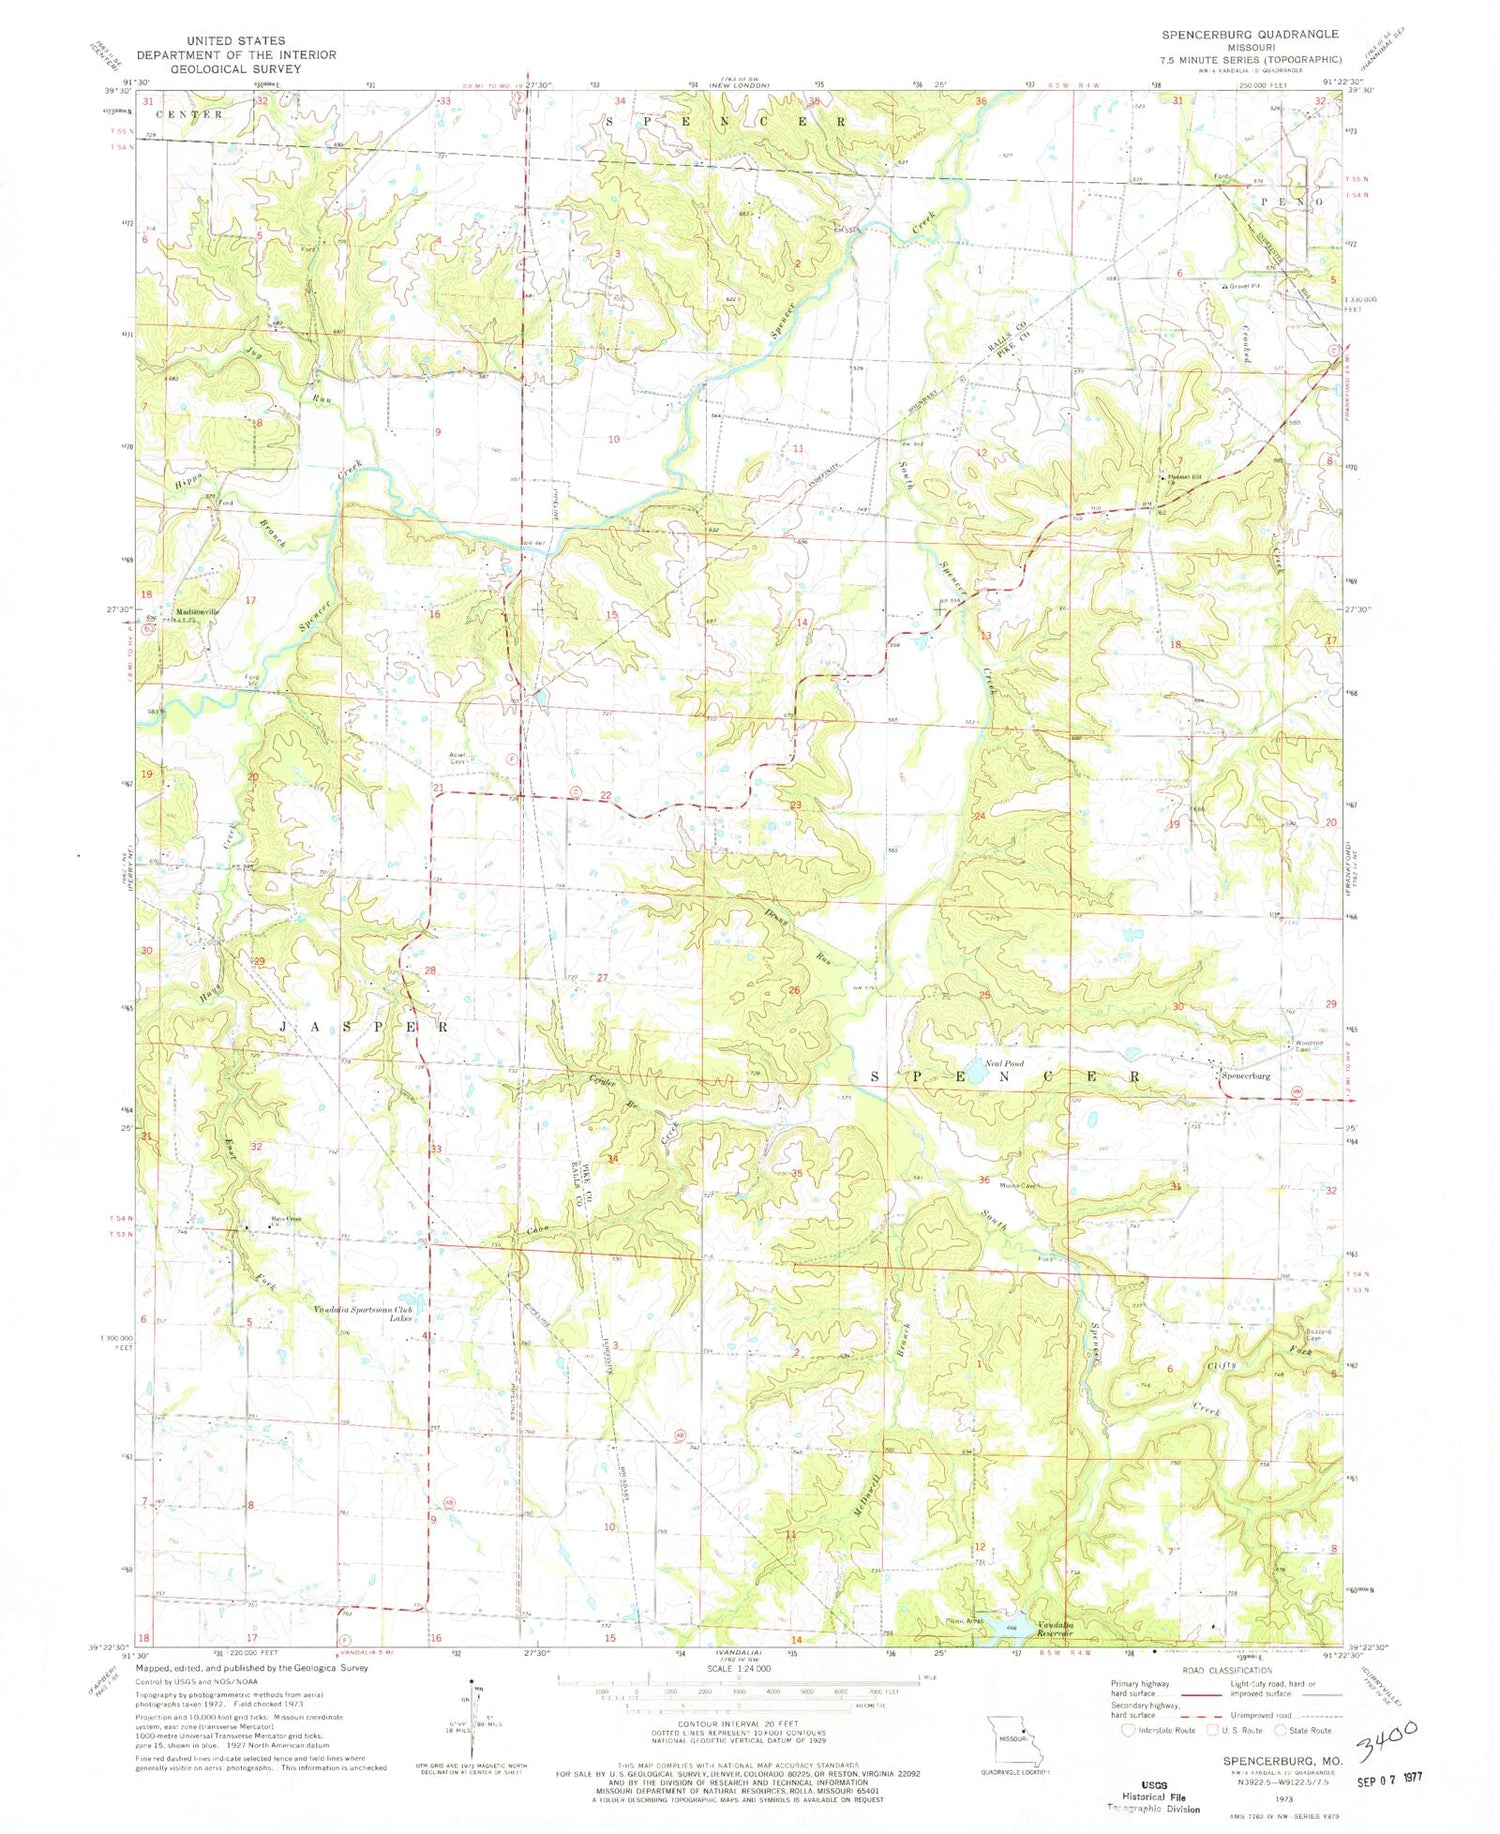 Classic USGS Spencerburg Missouri 7.5'x7.5' Topo Map Image